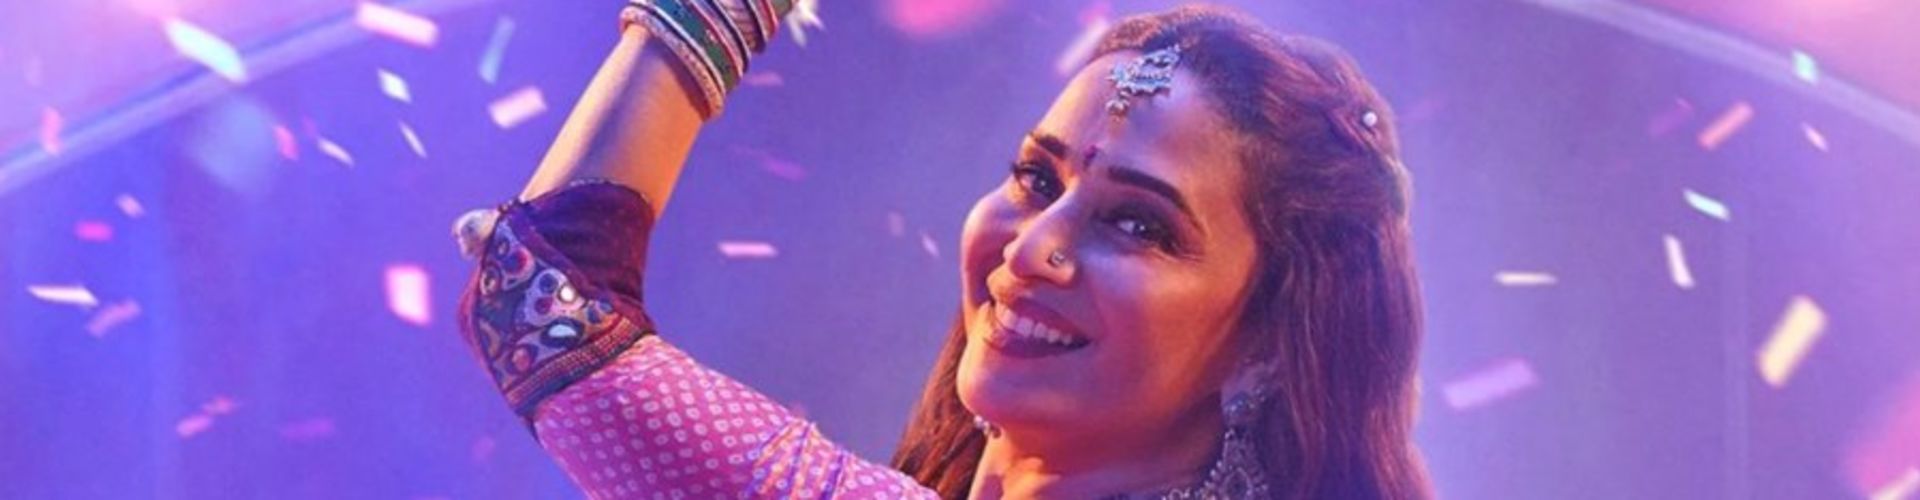 Prime Video Announces Maja Ma Starring Madhuri Dixit Nene